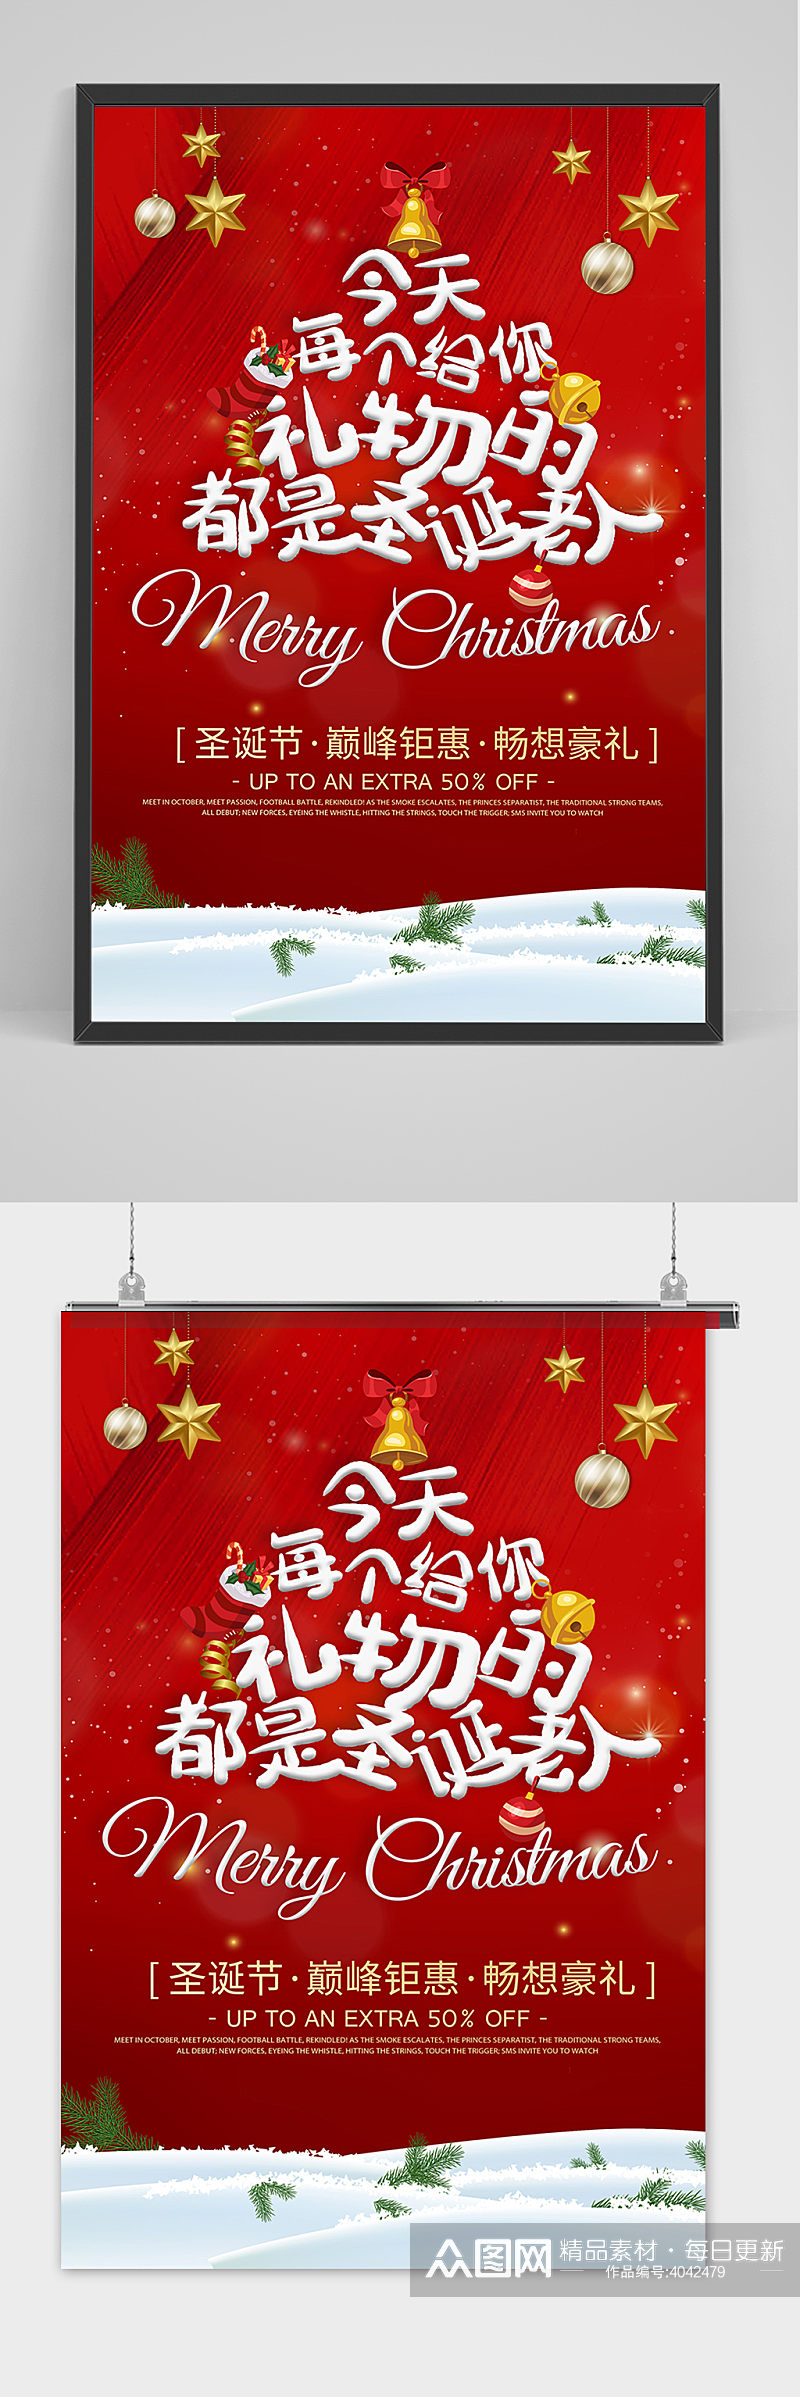 圣诞节文案创意红色海报素材